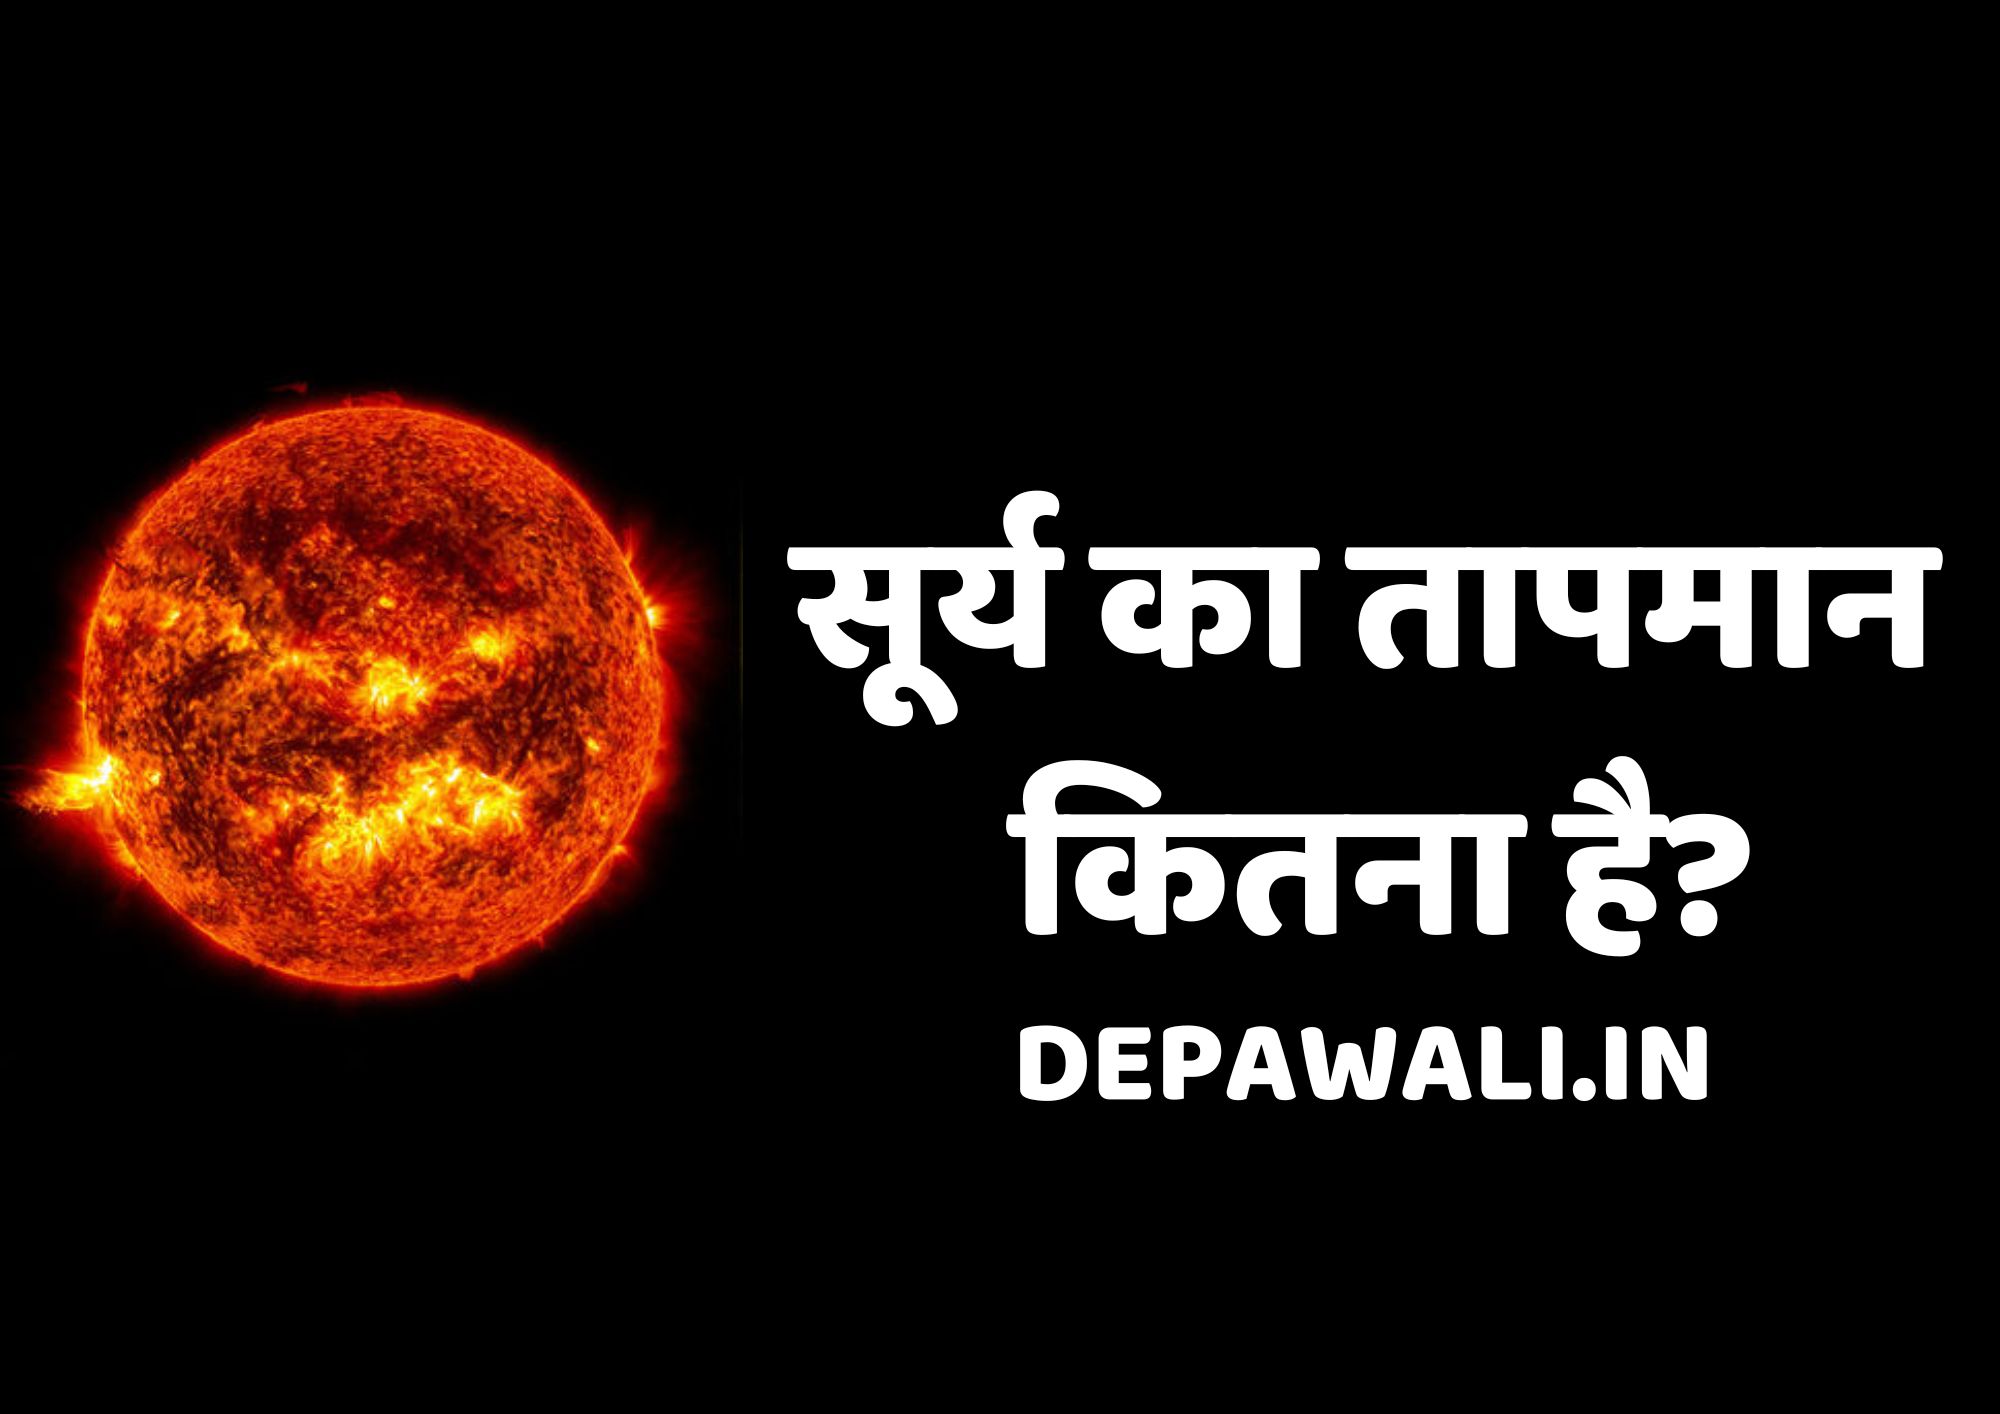 सूर्य का तापमान कितना है, सूर्य के केंद्र का तापमान कितना है (Sun Temperature In Hindi) - Surya Ka Tapman Kitna Hai